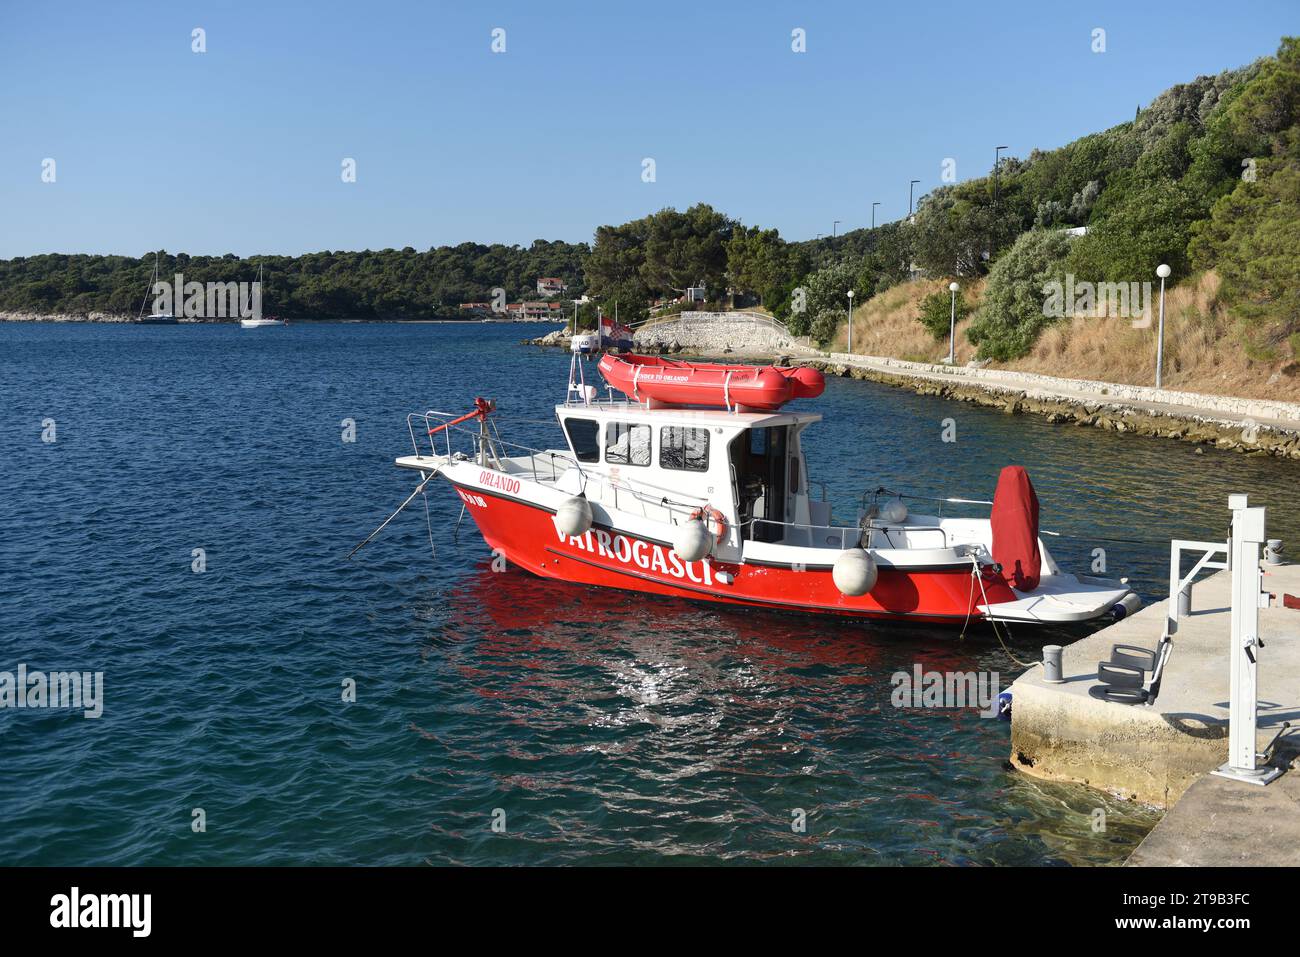 Zaton, Dubrovnik, Croazia - 6 luglio 2021: Una barca antincendio progettata per combattere gli incendi della costa e delle navi. Motoscafo dei vigili del fuoco a Zaton vicino a Dubrovnik Foto Stock